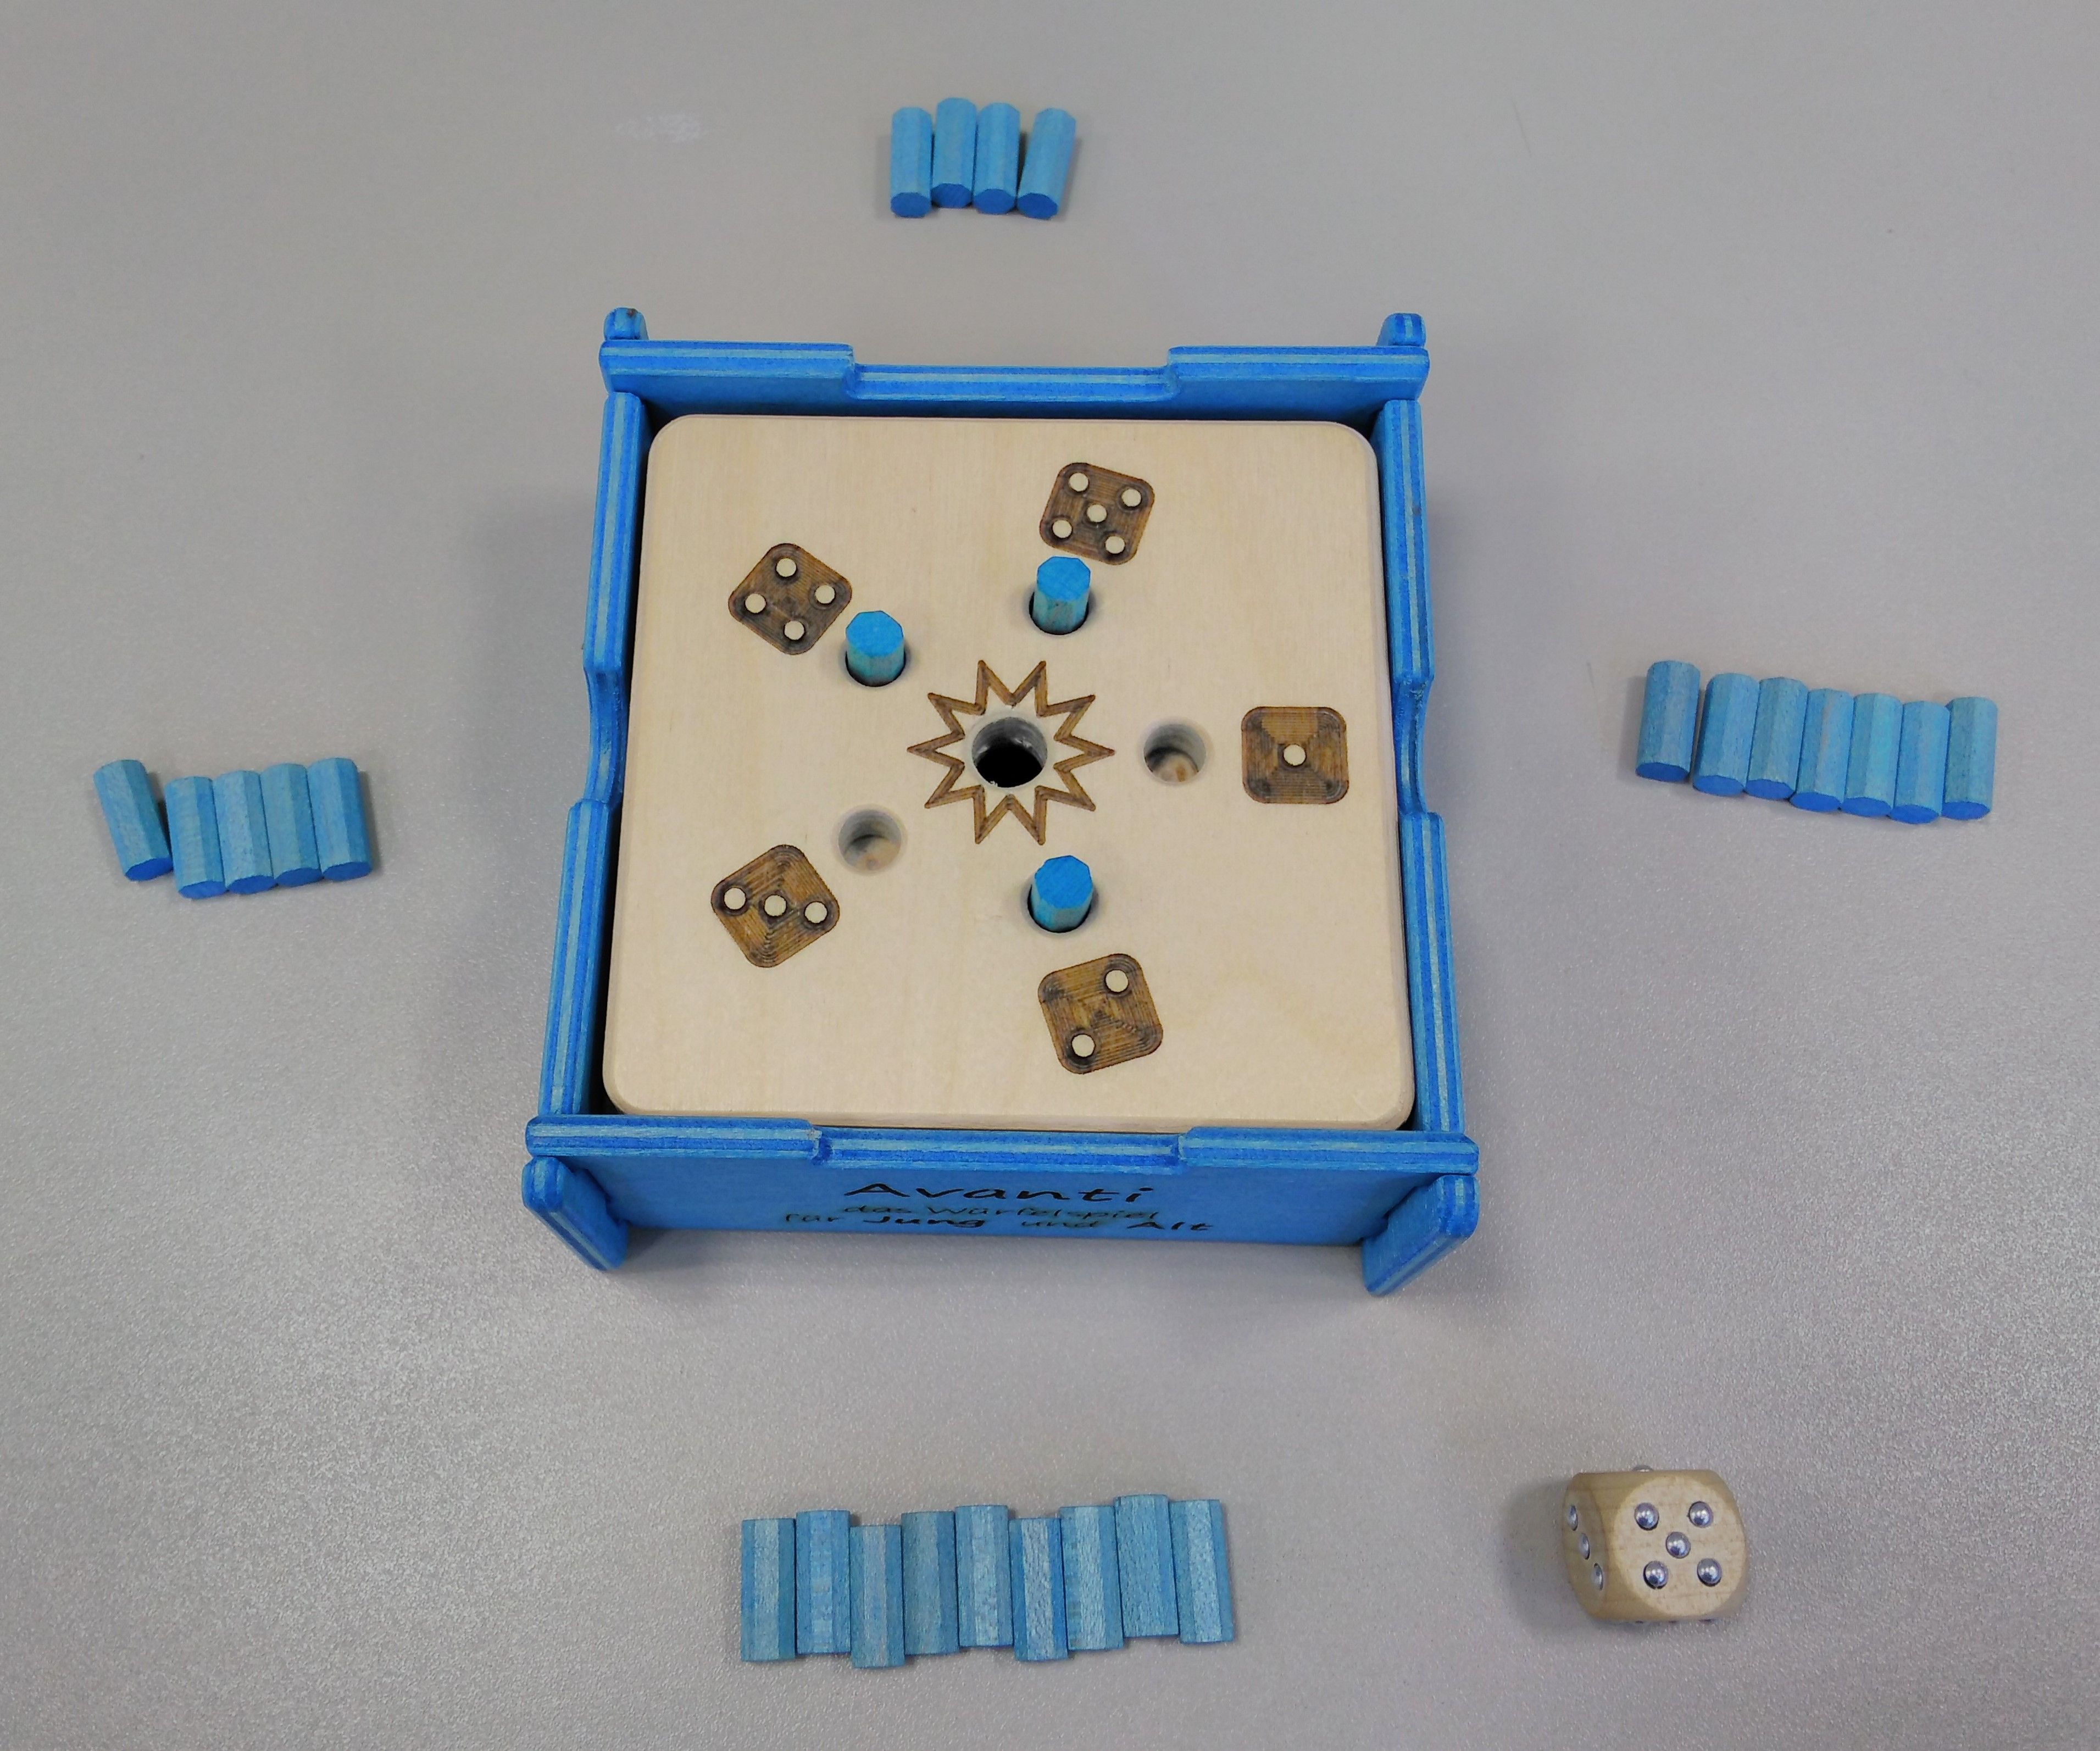 Taktiles Würfelspiel mit 5 Steckplätzen und einem Loch zum Versenken der Spielstifte. An den 4 Seiten liegen blaue Spielstifte, 1 taktiler Würfel